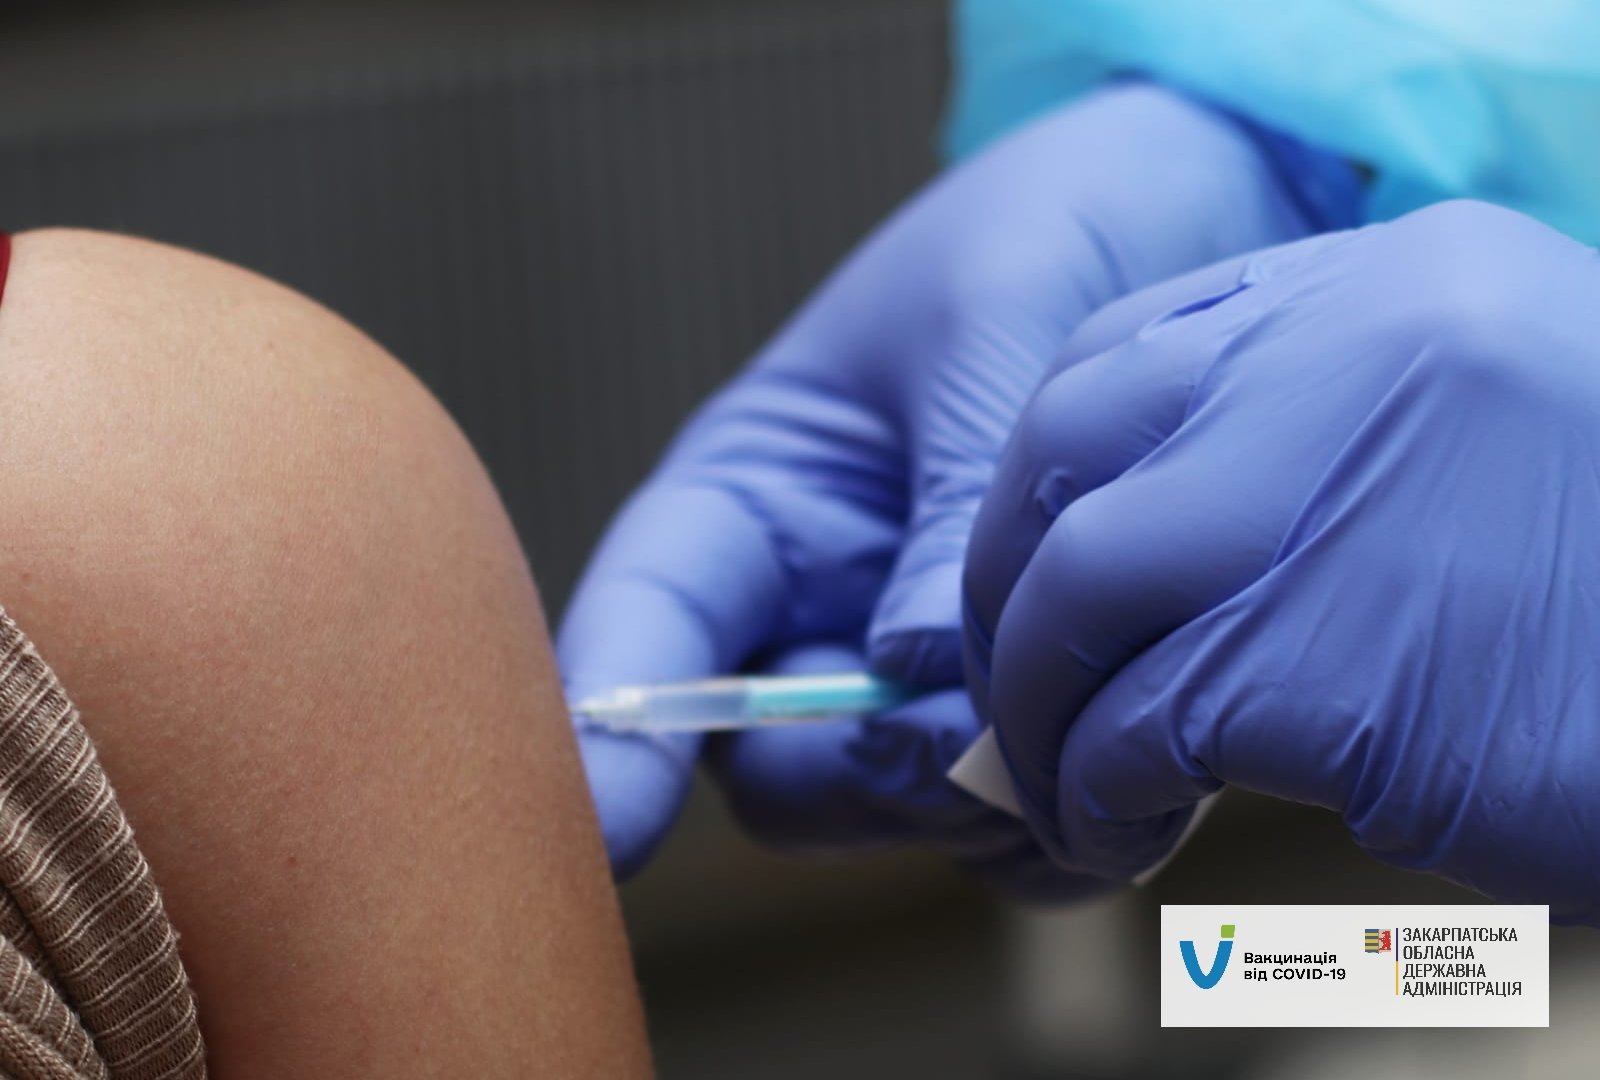 Вакцинация в регионе продолжается, закарпатцы все чаще решаются на вакцинацию от COVID-19.